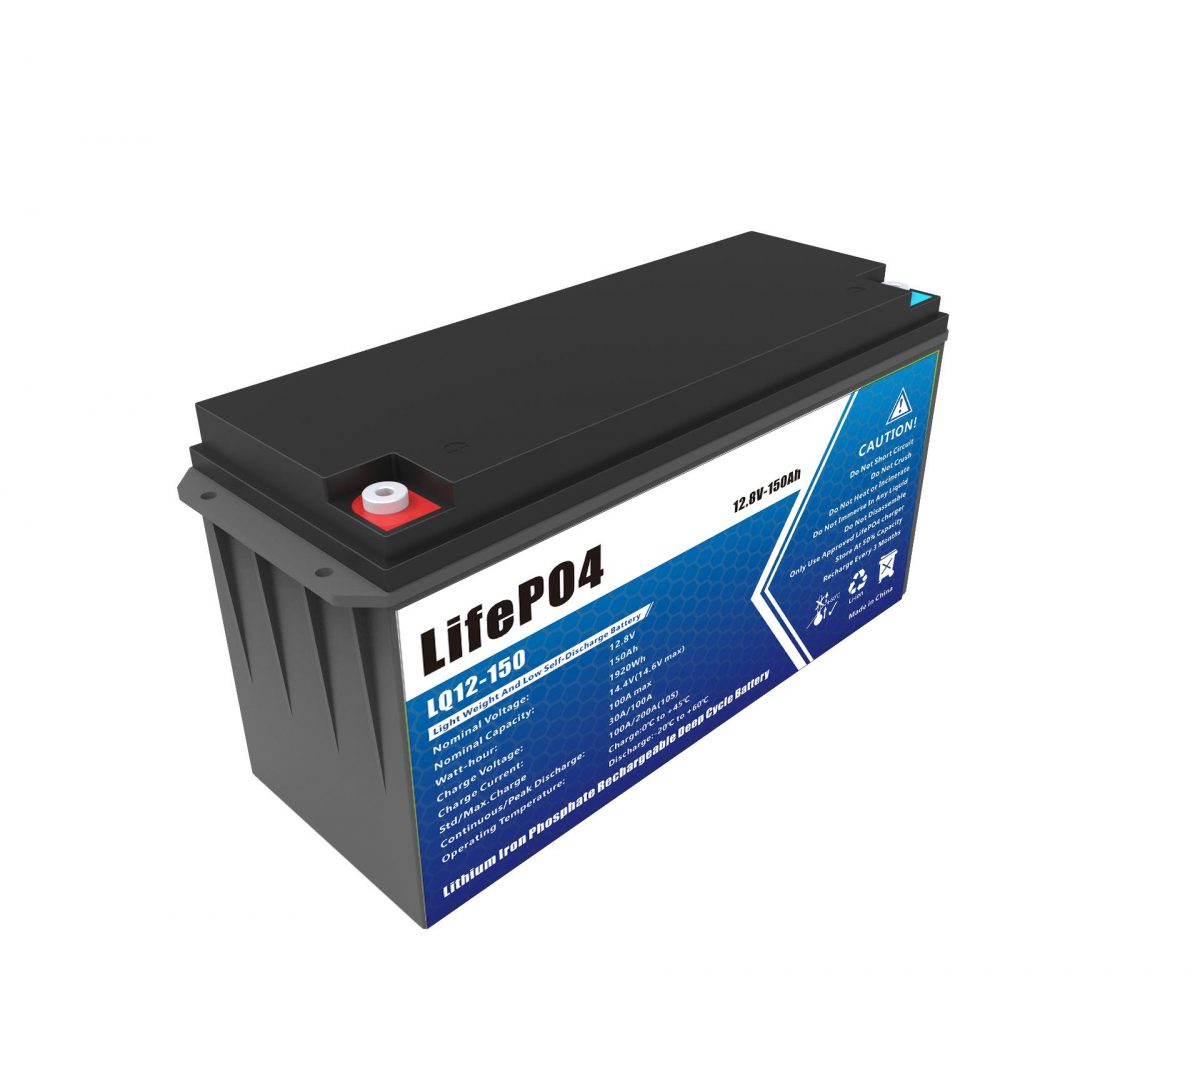 150V LifePO4 battery